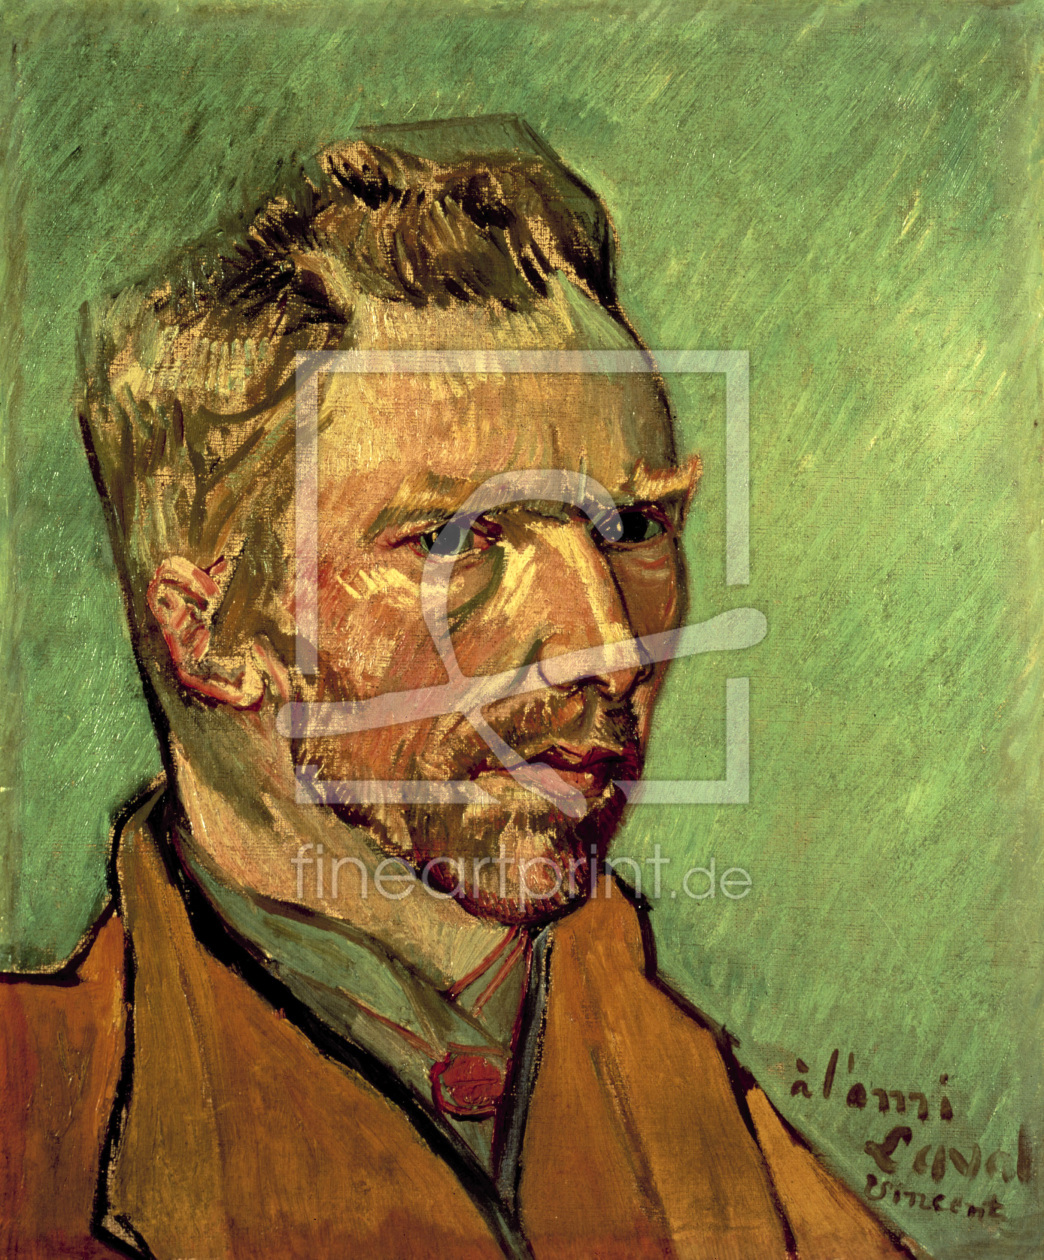 Bild-Nr.: 30003072 van Gogh/ Self-portrait / 1888 erstellt von van Gogh, Vincent